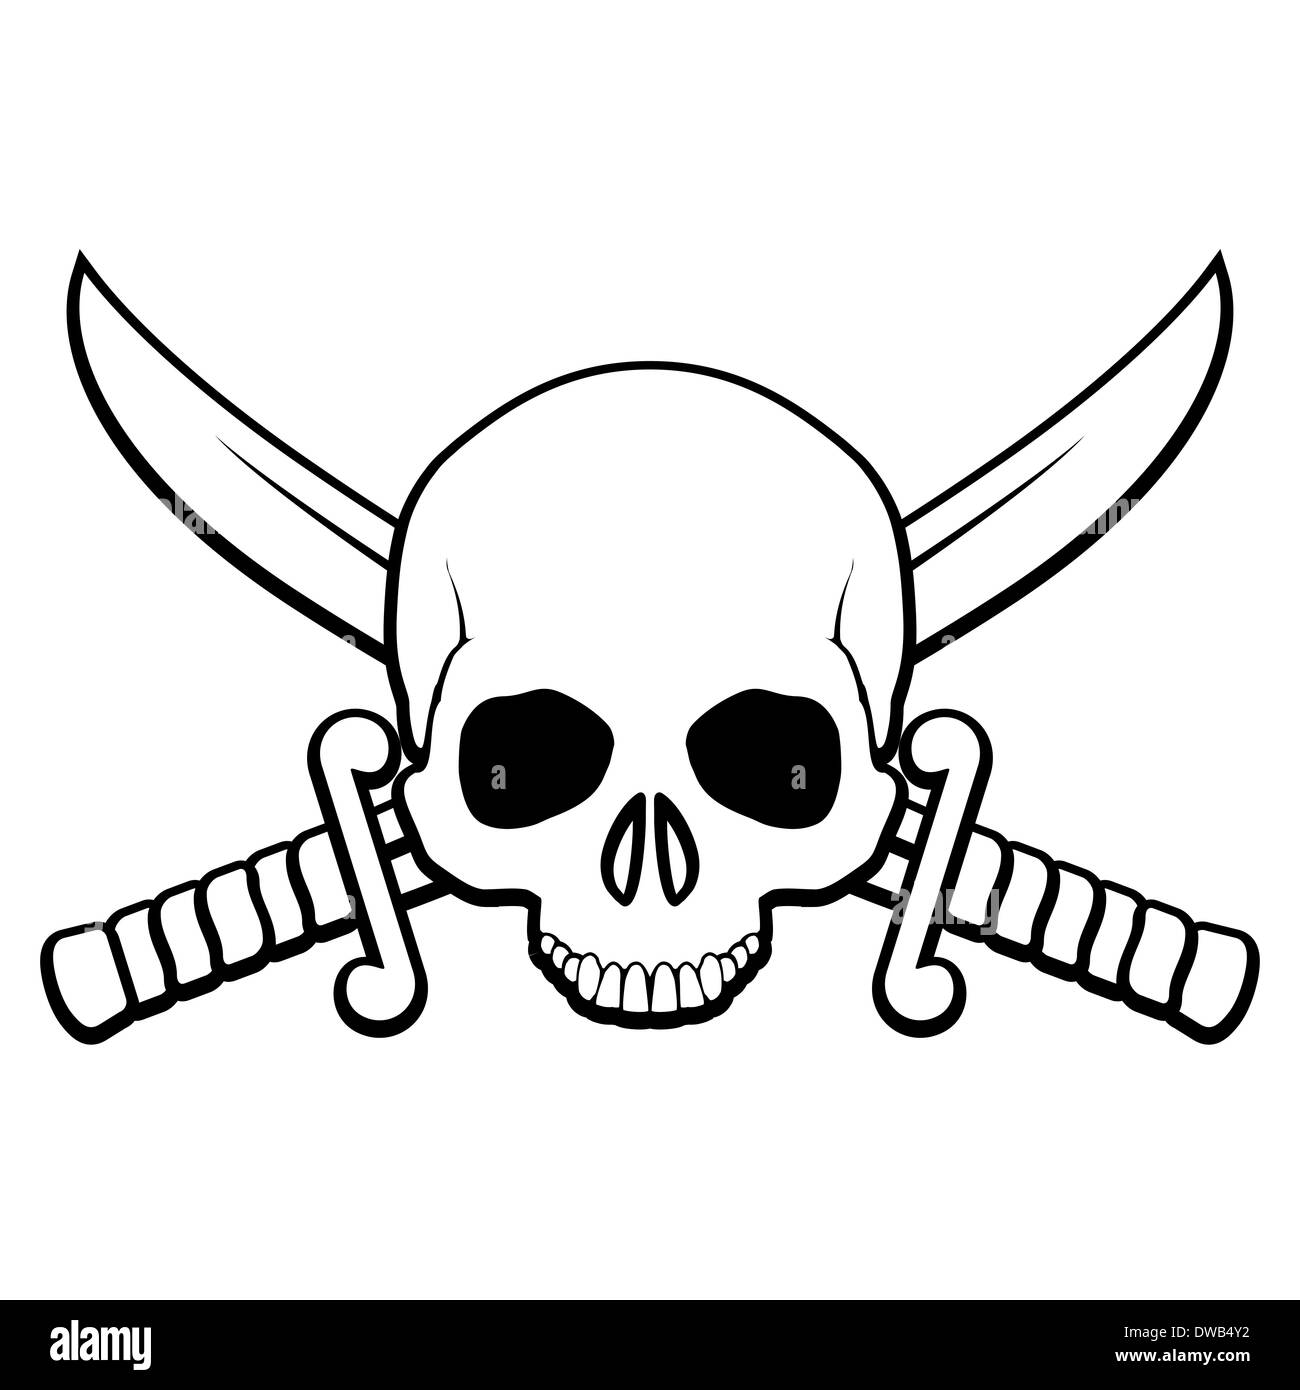 Пиратский череп с ножами